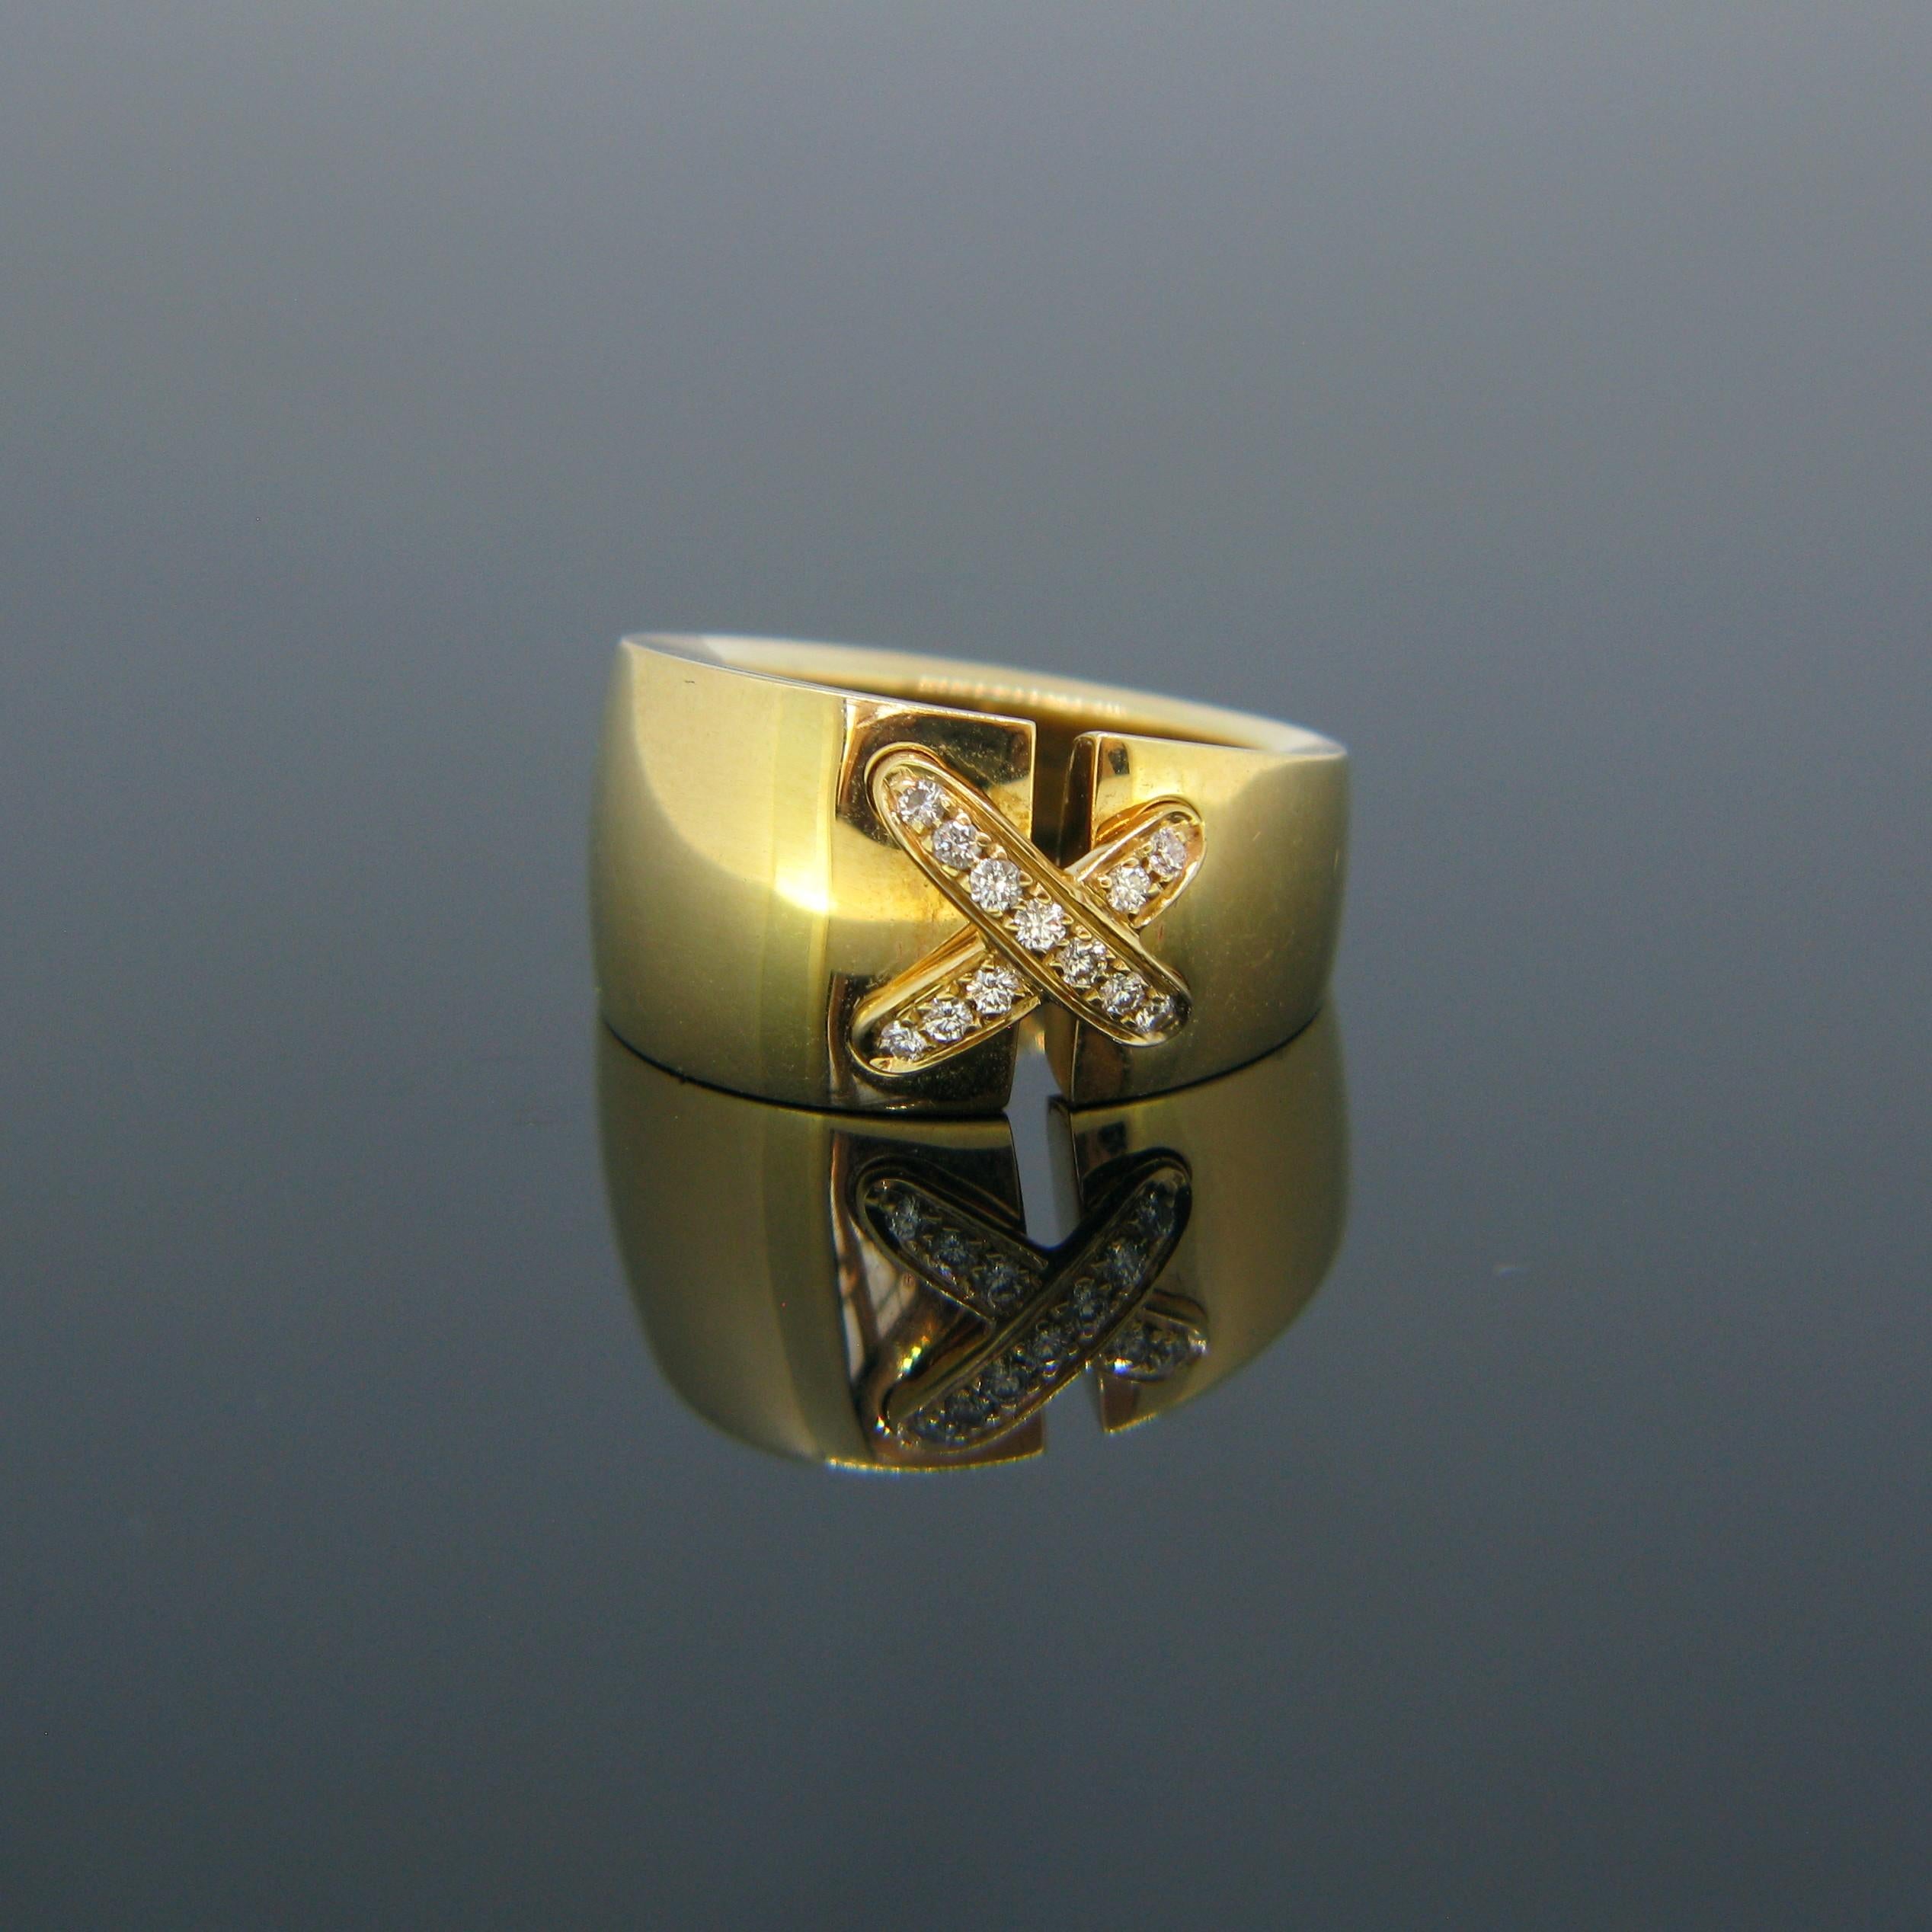 Cette magnifique bague de Chaumet est fabriquée en or jaune 18 carats. Il provient de la collection intitulée 